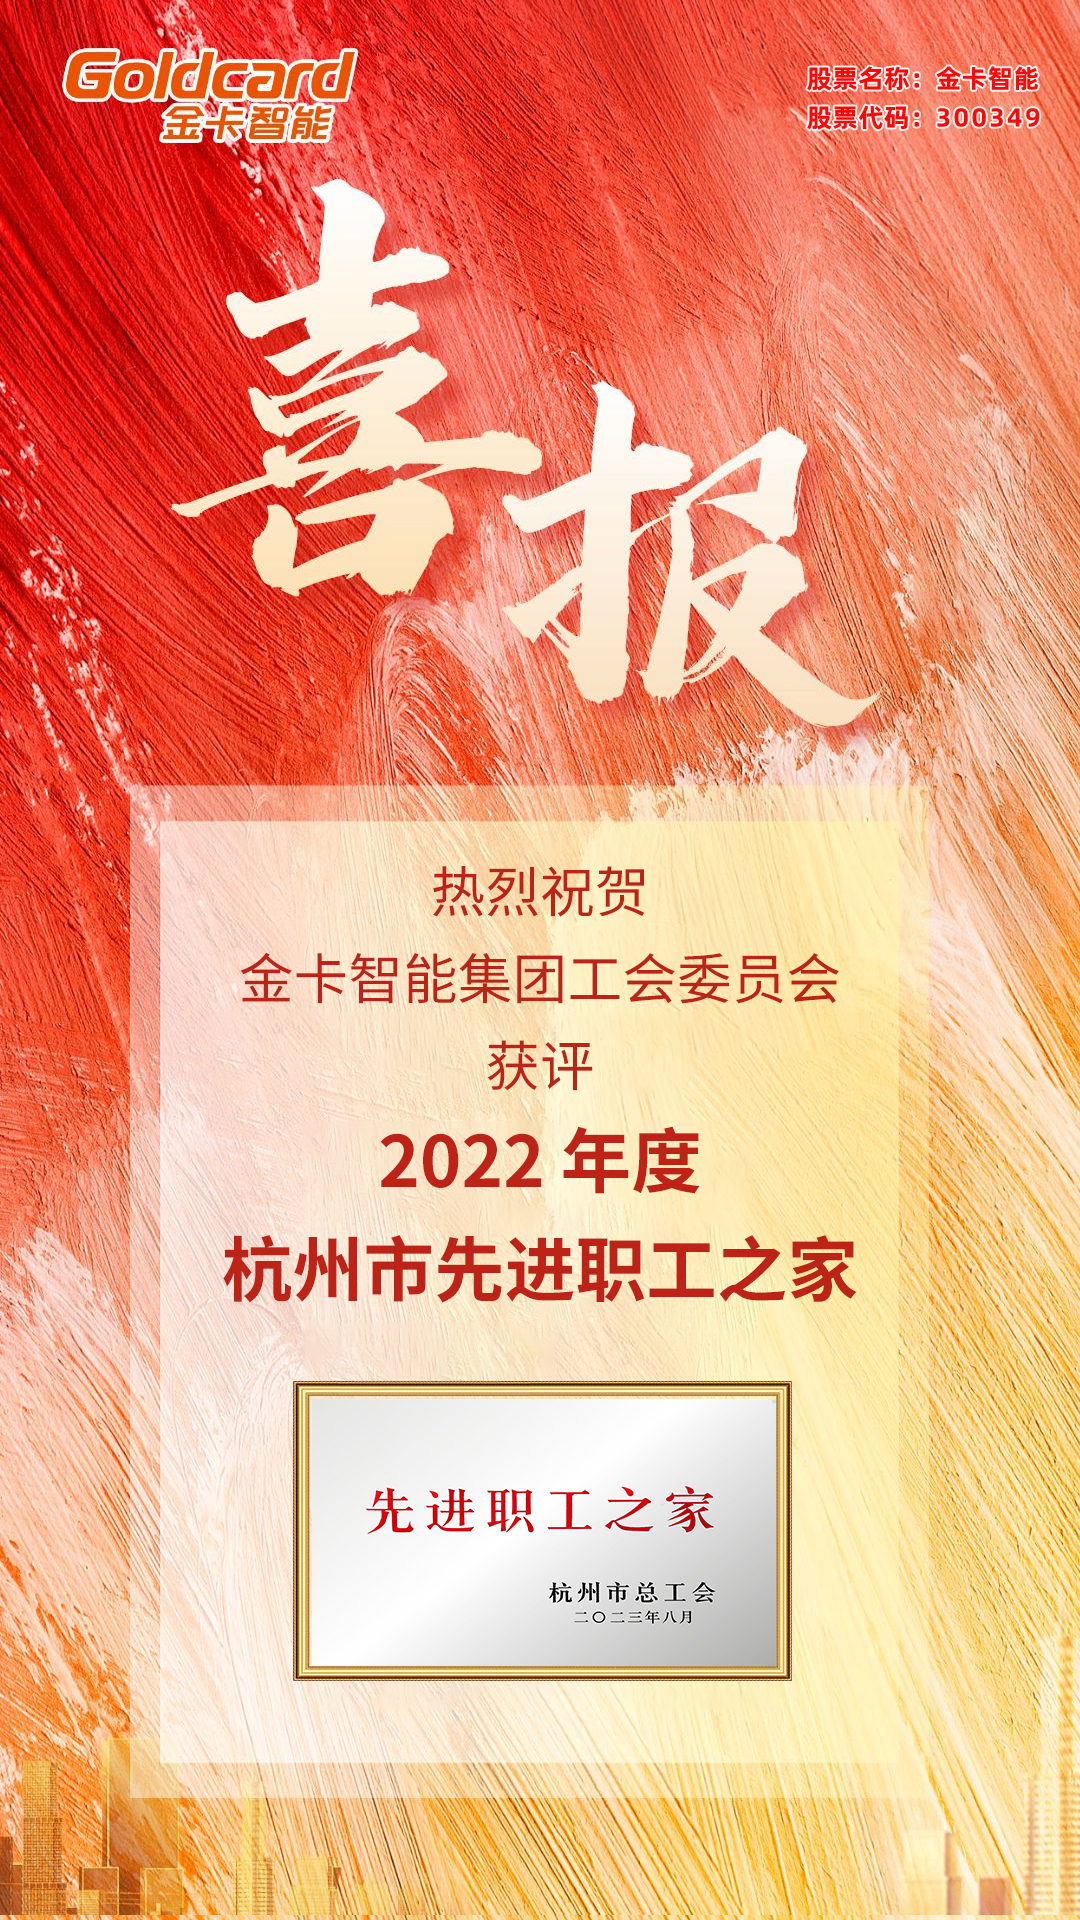 2022-年度杭州市先进职工之家(1).jpg